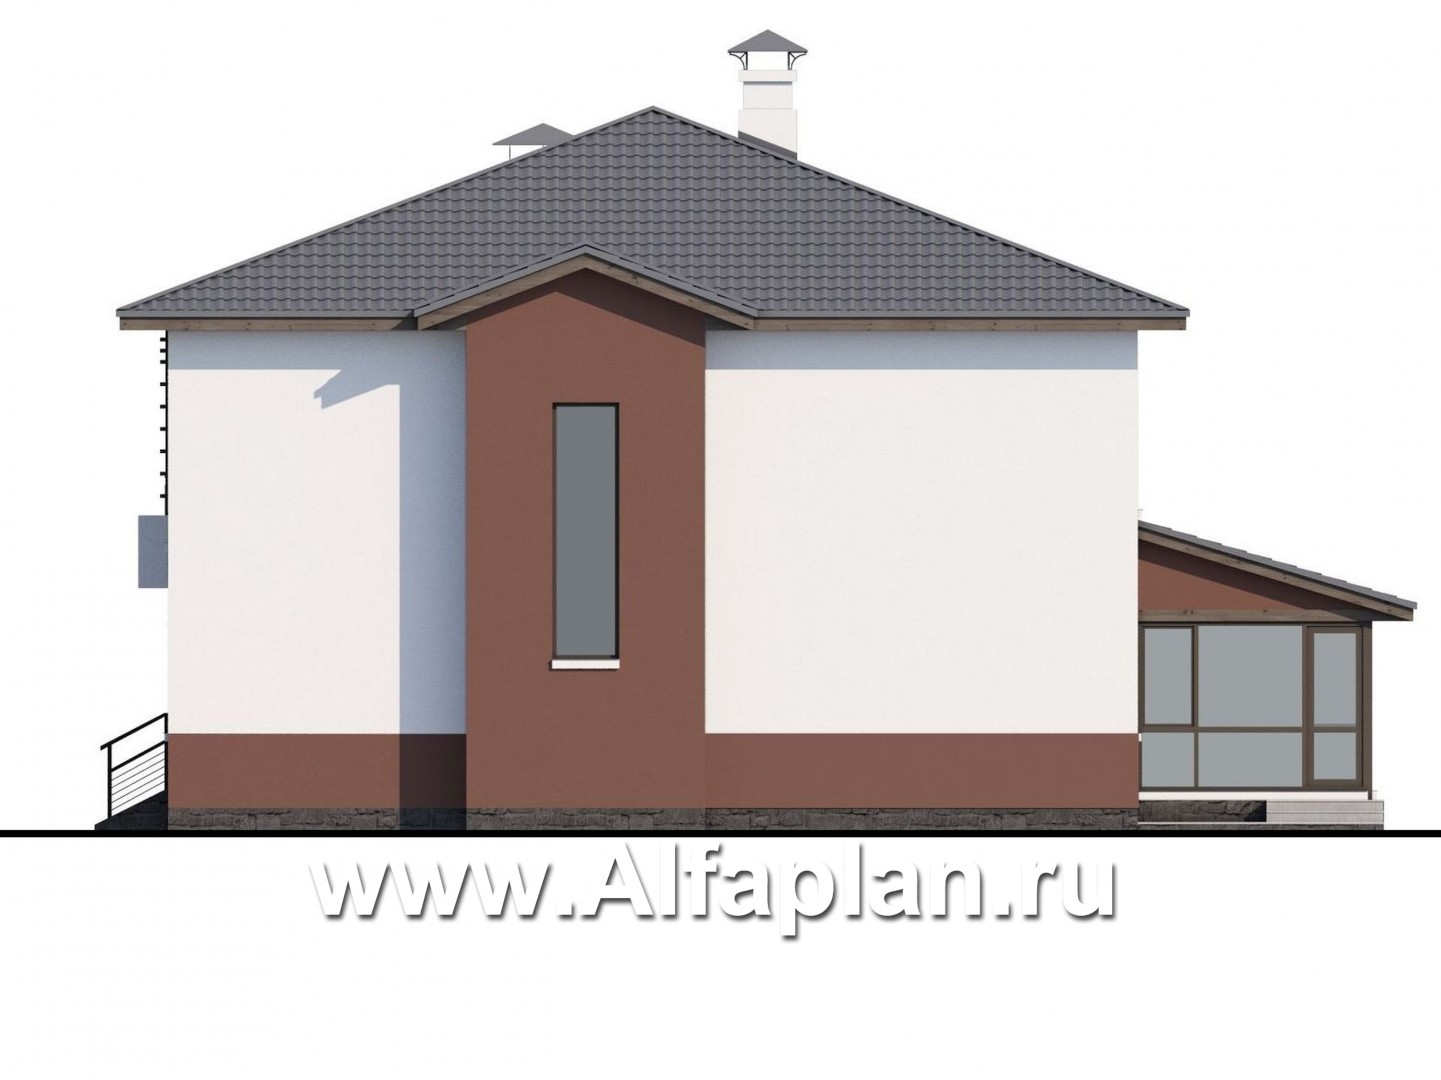 Проекты домов Альфаплан - «Выбор» - экономичный и комфортный современный дом - изображение фасада №2